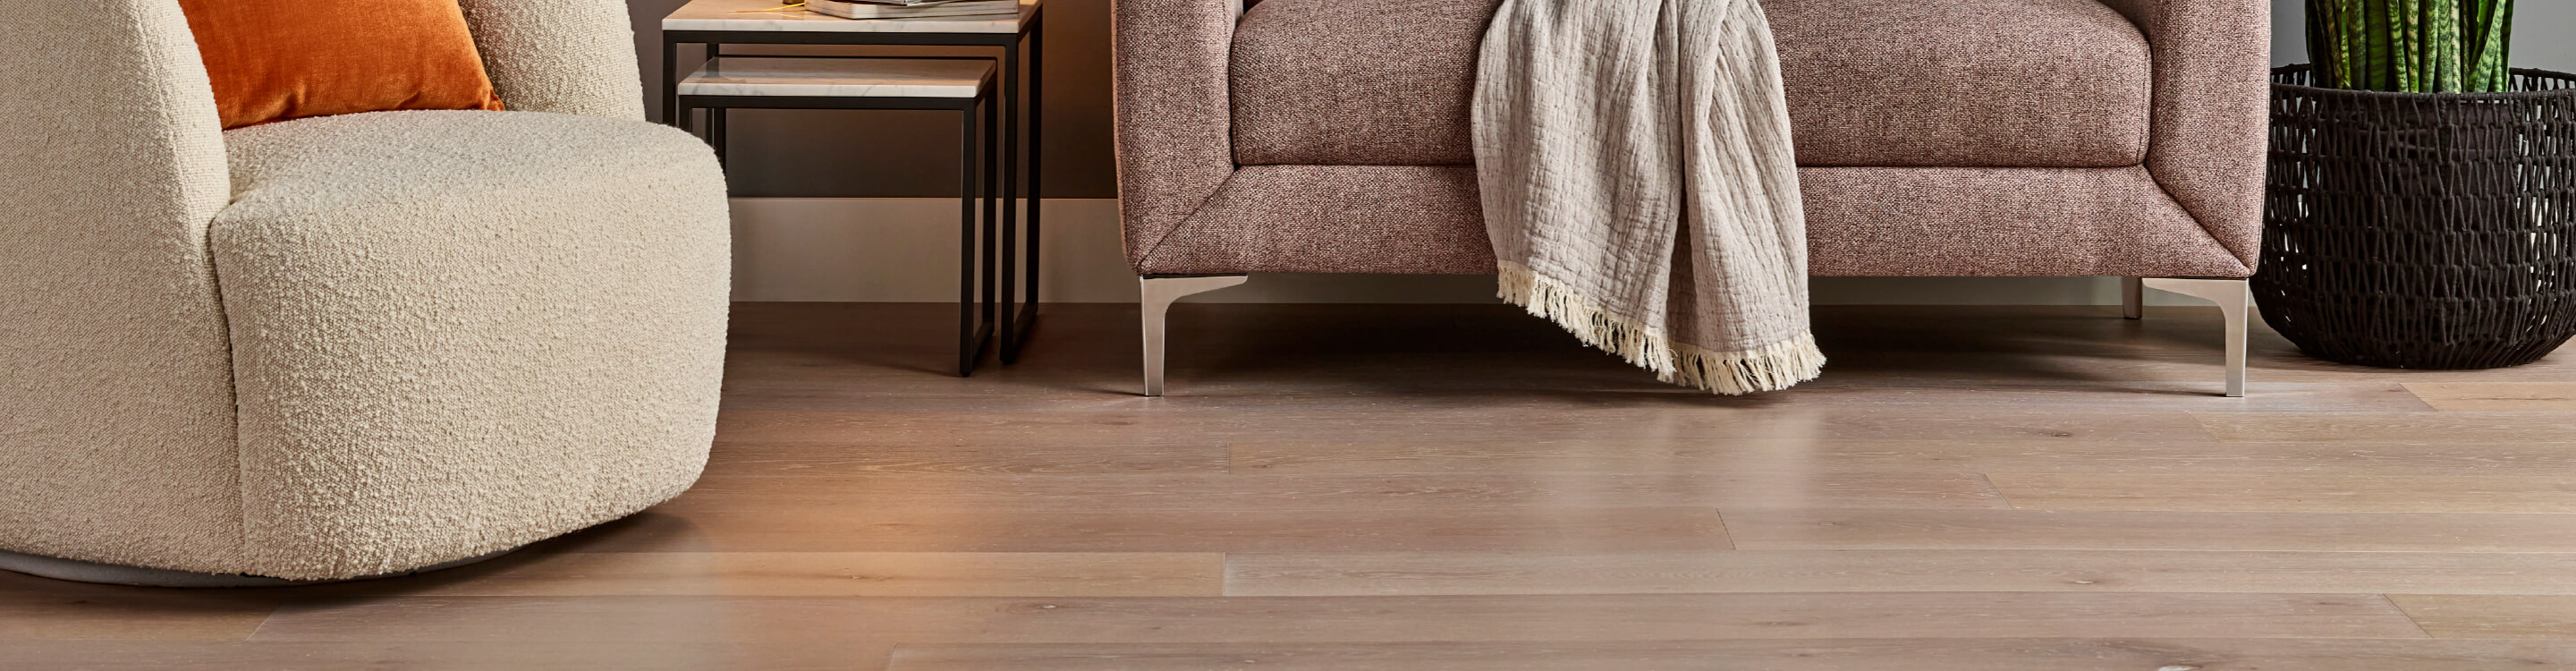 Wood-look vinyl flooring under furniture.